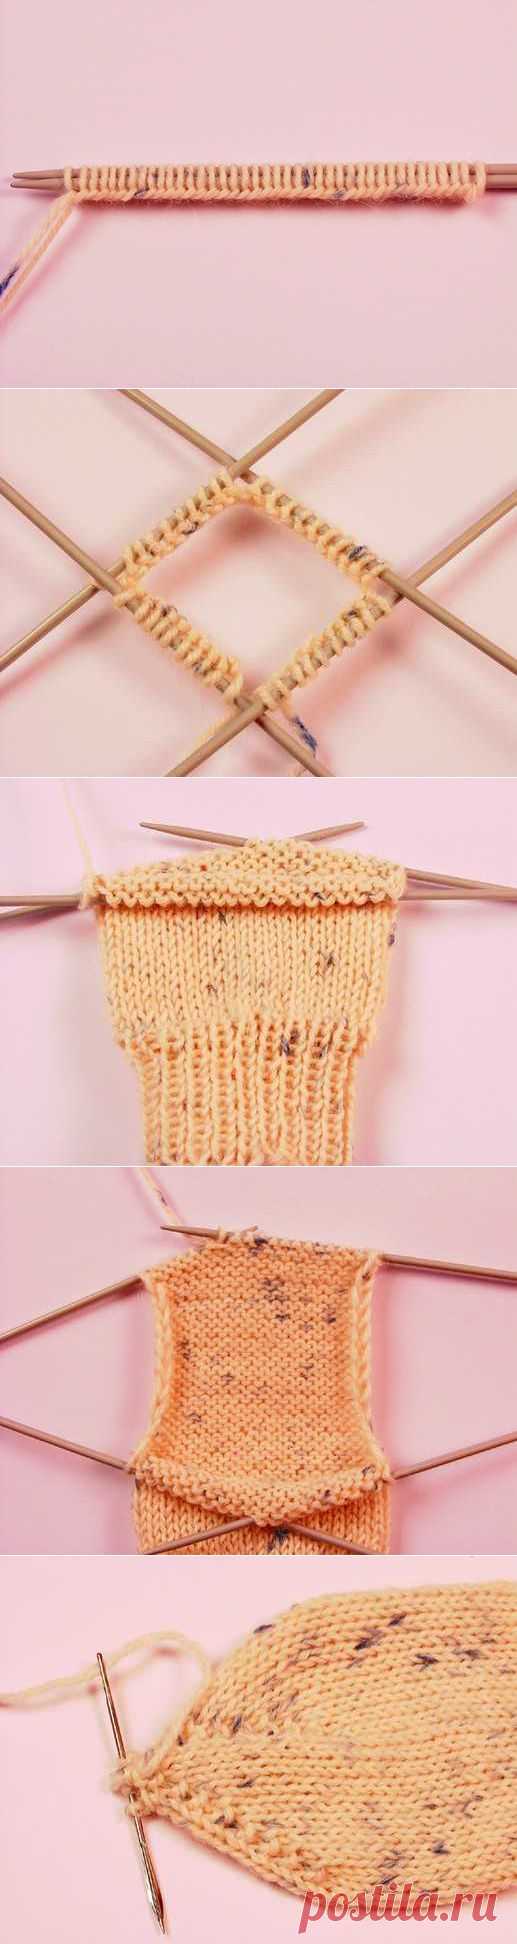 Техника вязания. Учимся вязать носки | Домохозяйки